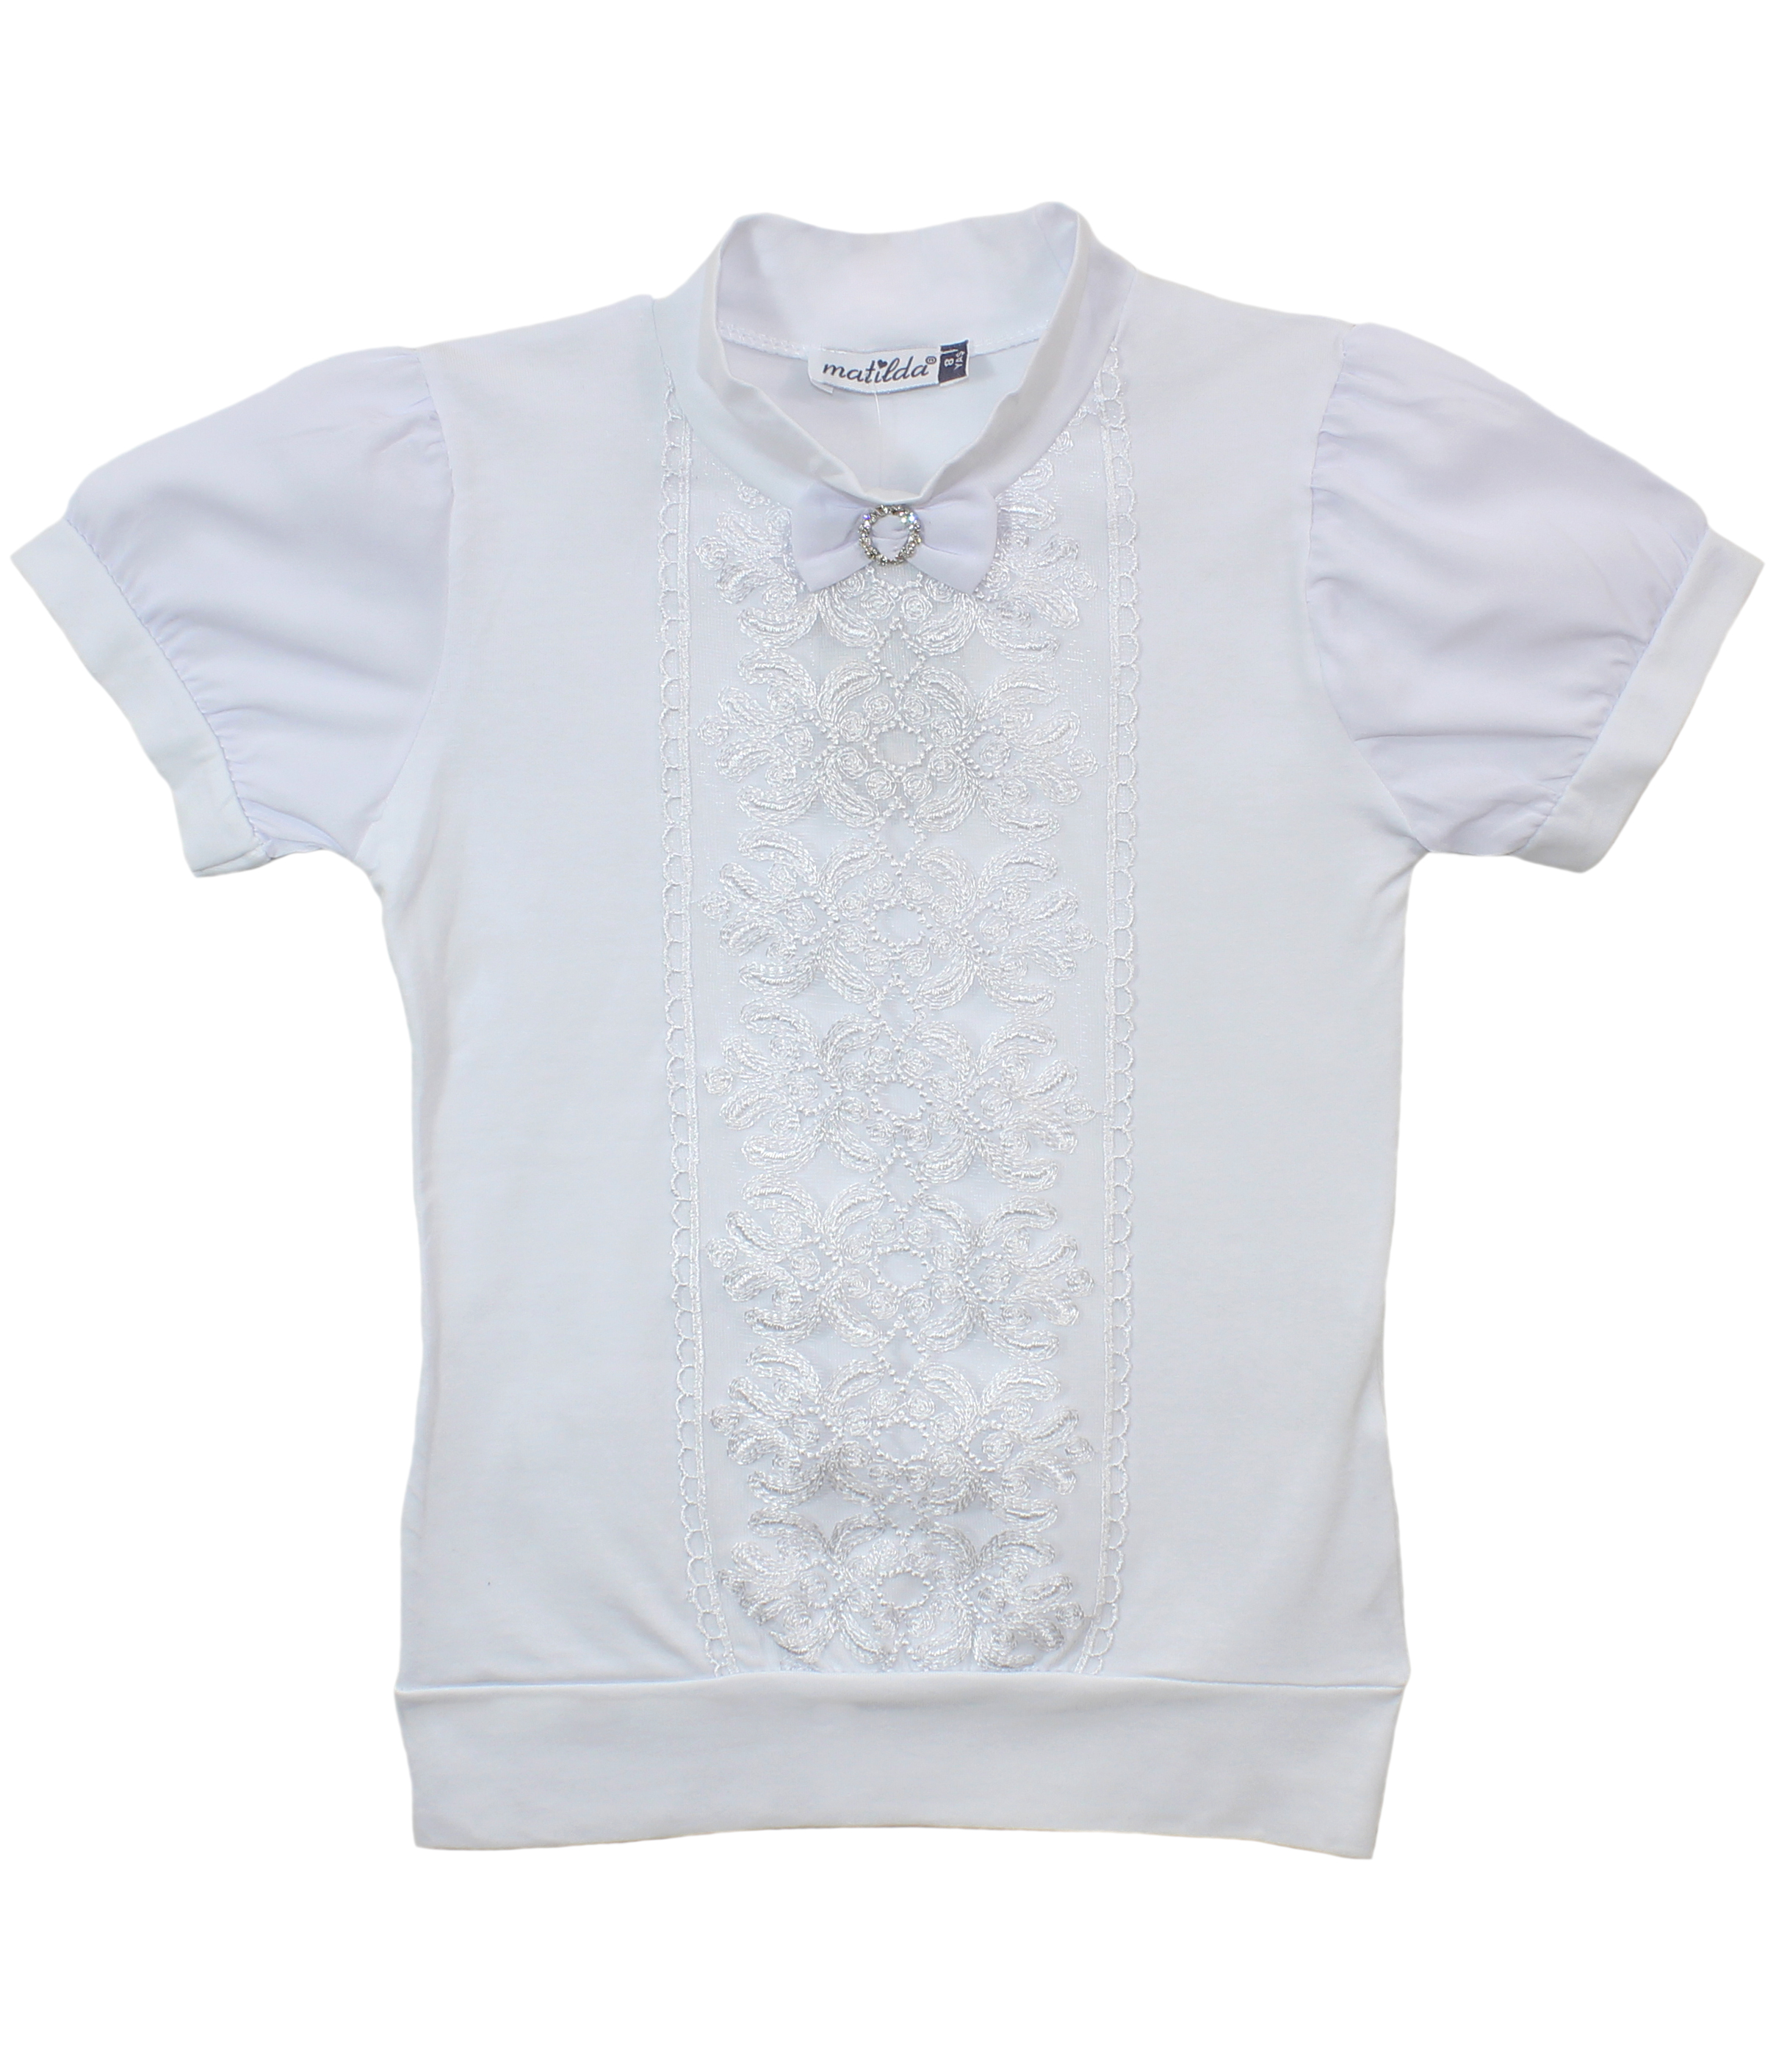 модная детская одежда 10015-1 блузка для девочки